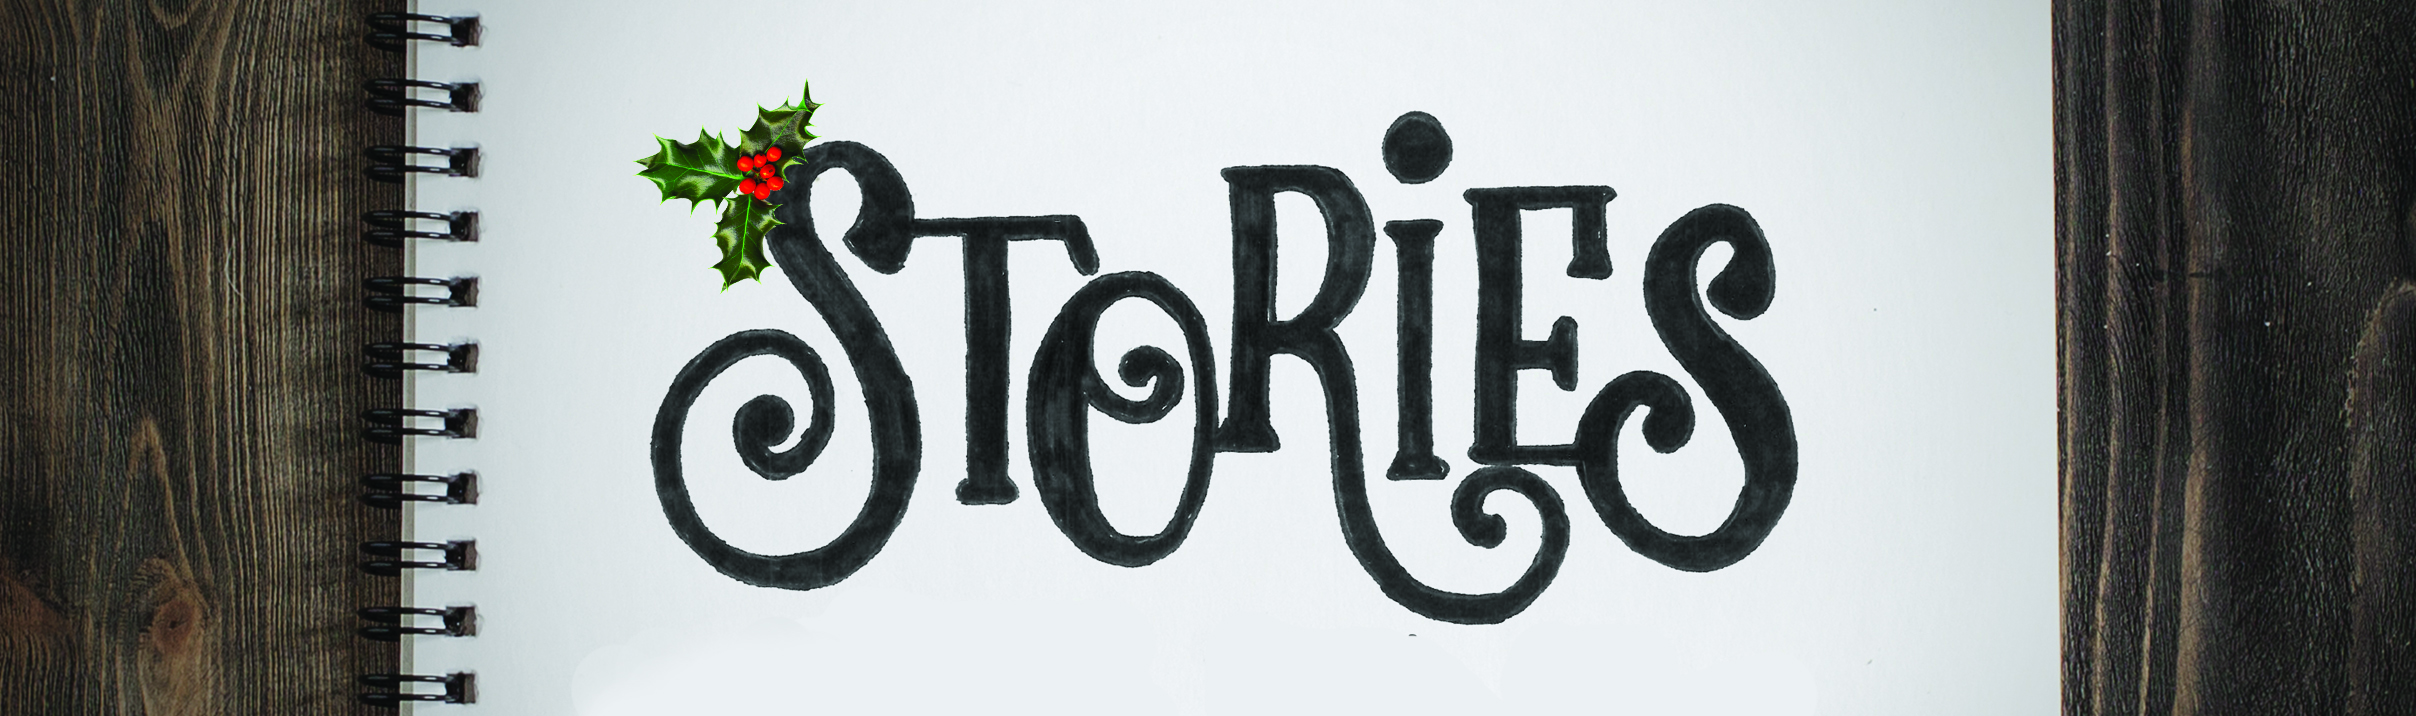 Stories: Week 1